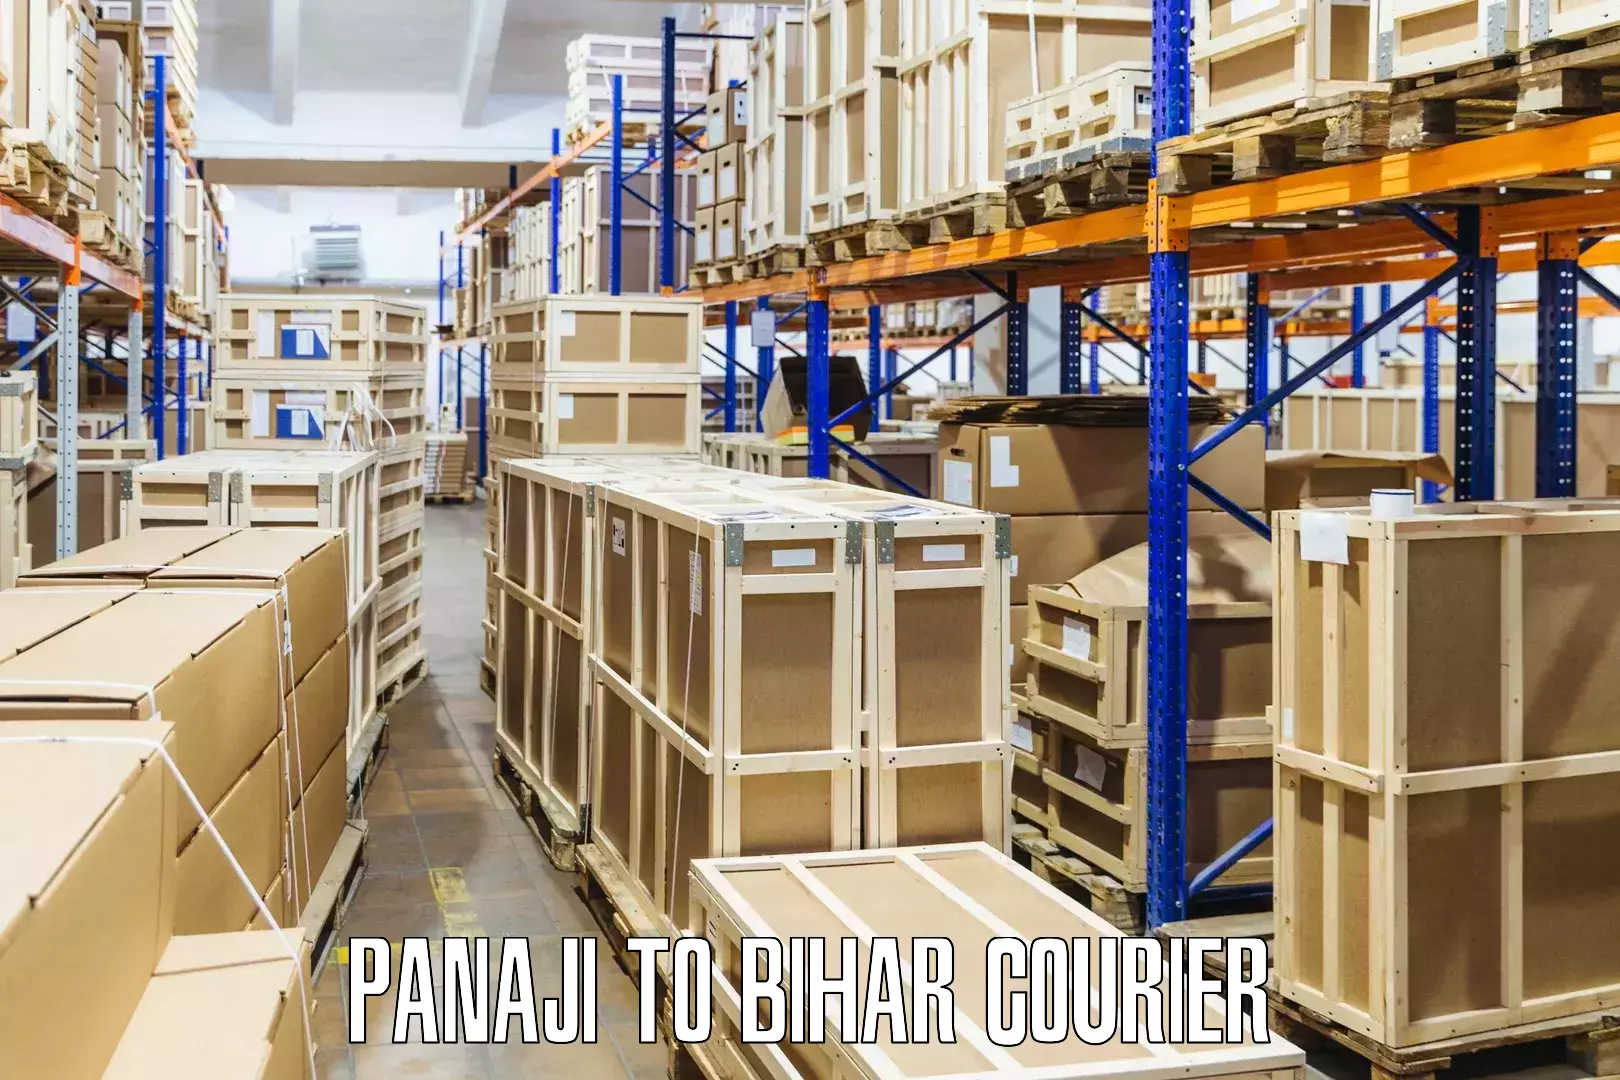 Efficient parcel transport Panaji to Bihar